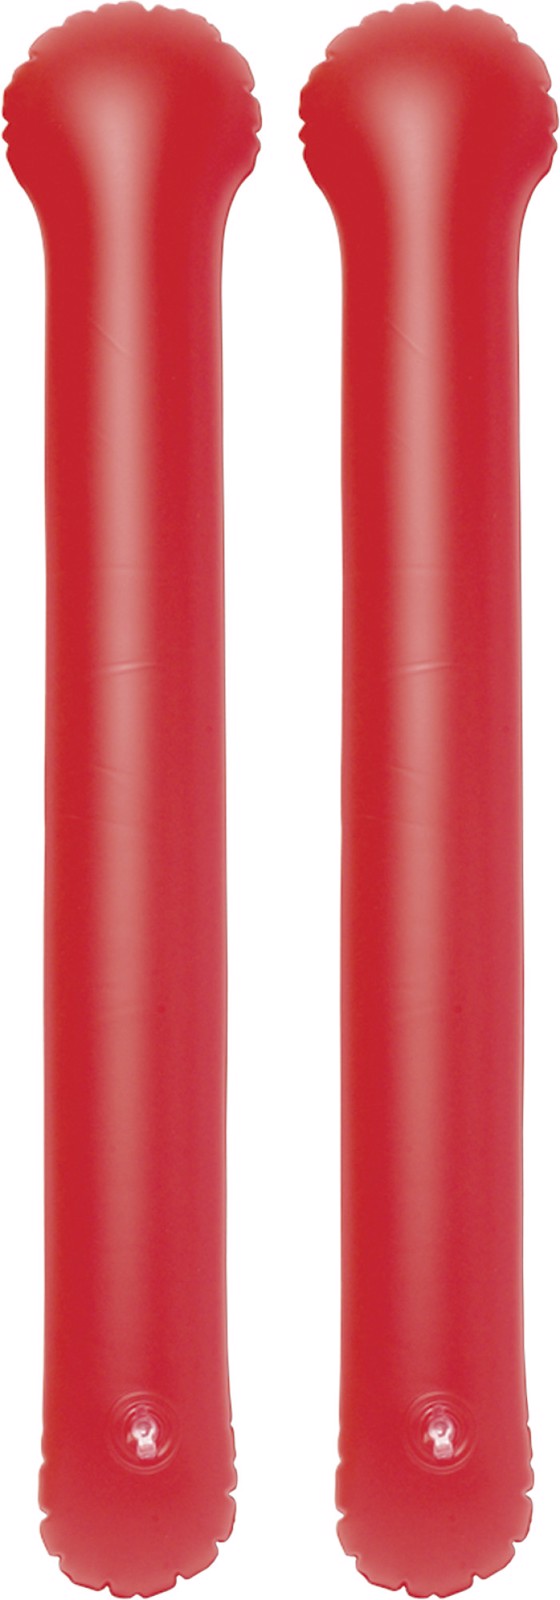 PVC thunder sticks - Red